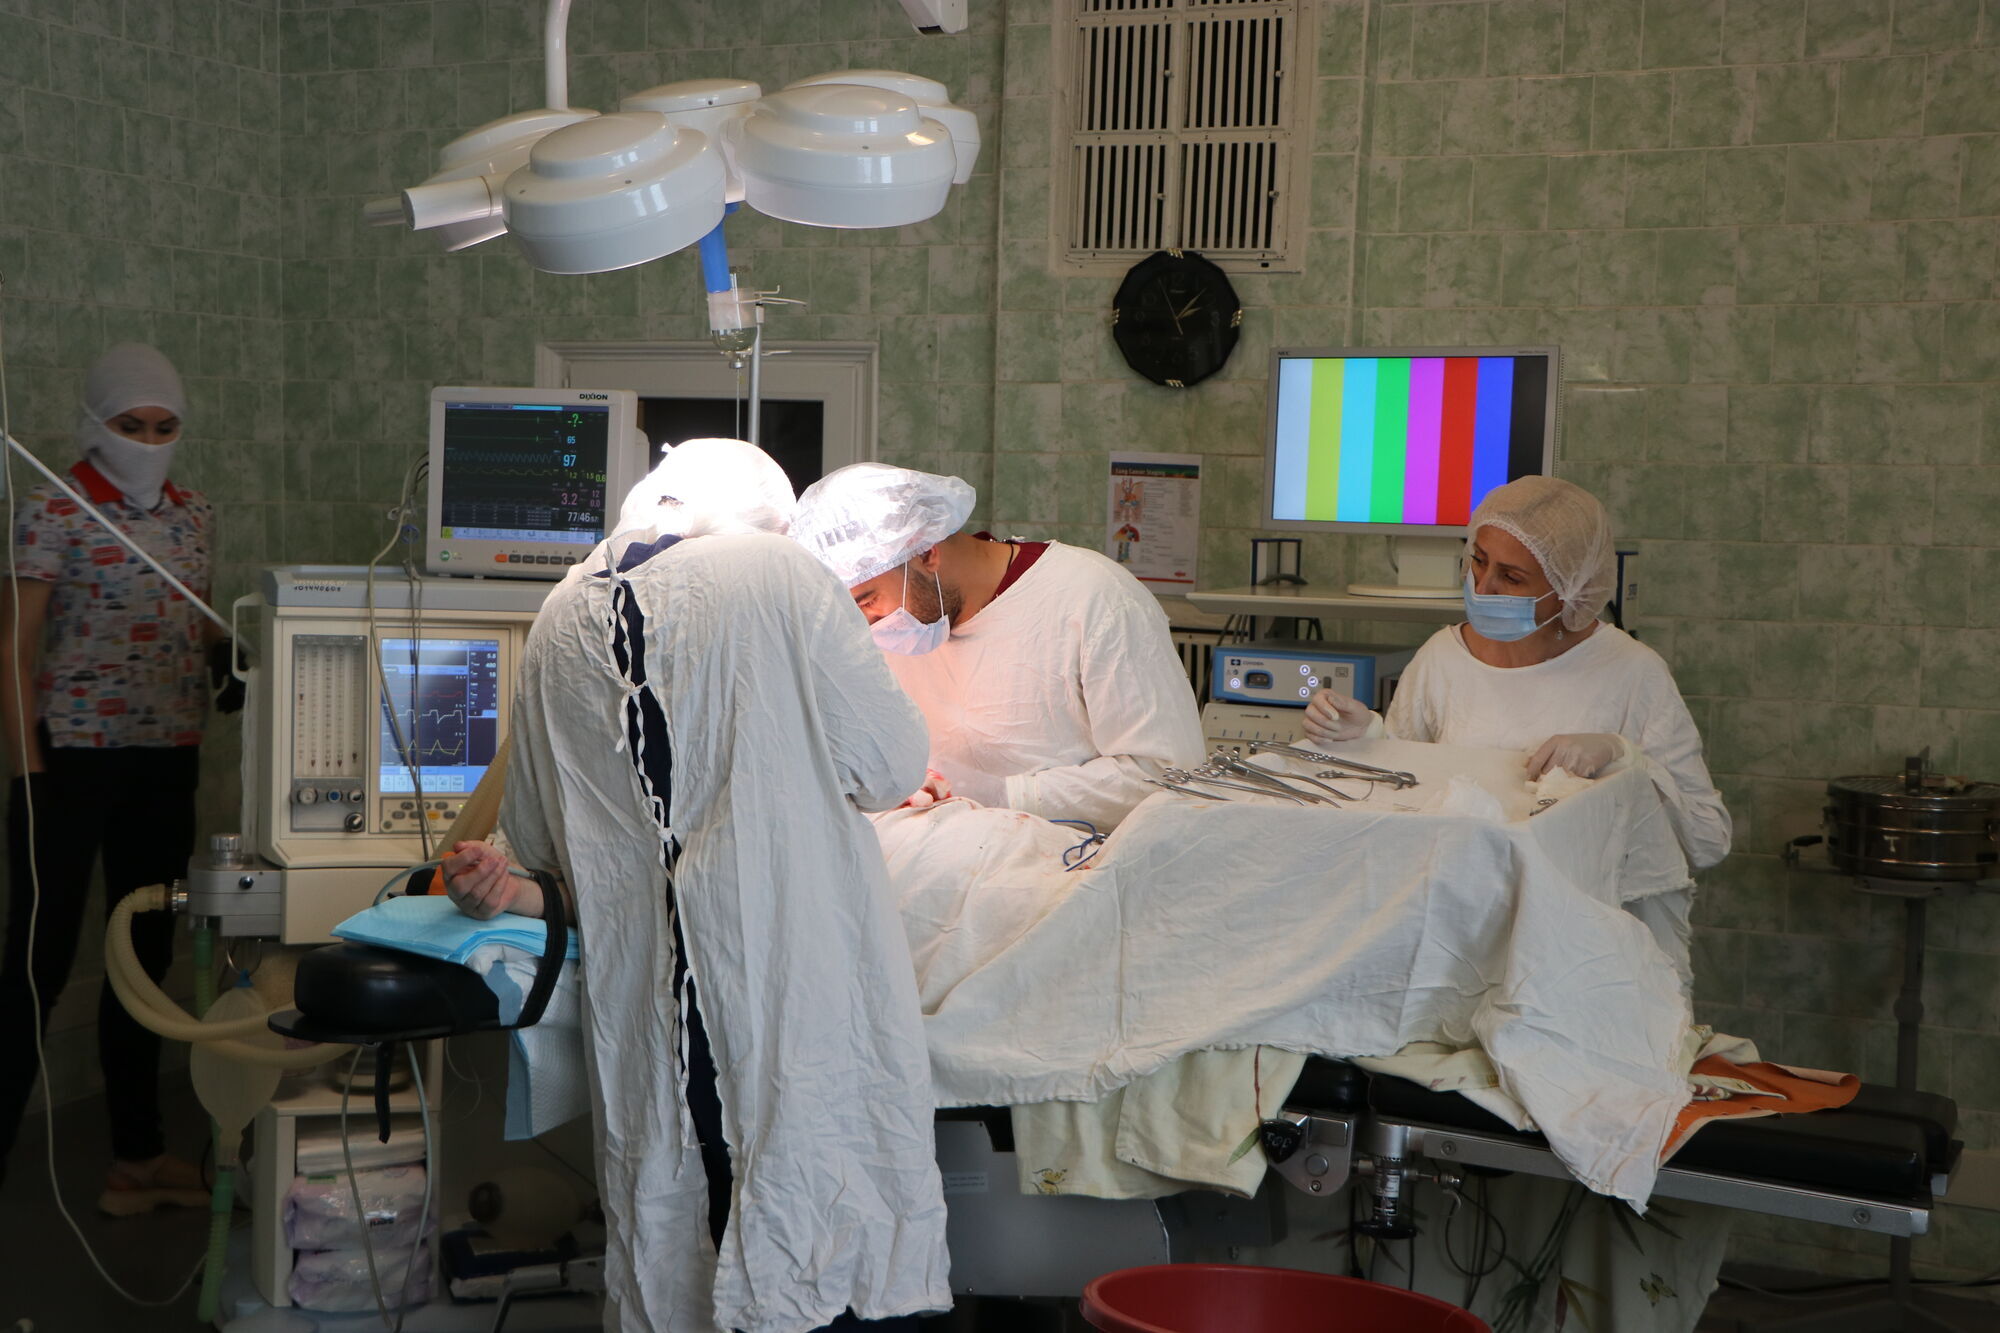 В больнице появился 3D-эндоскоп с флуоресцентной визуализацией